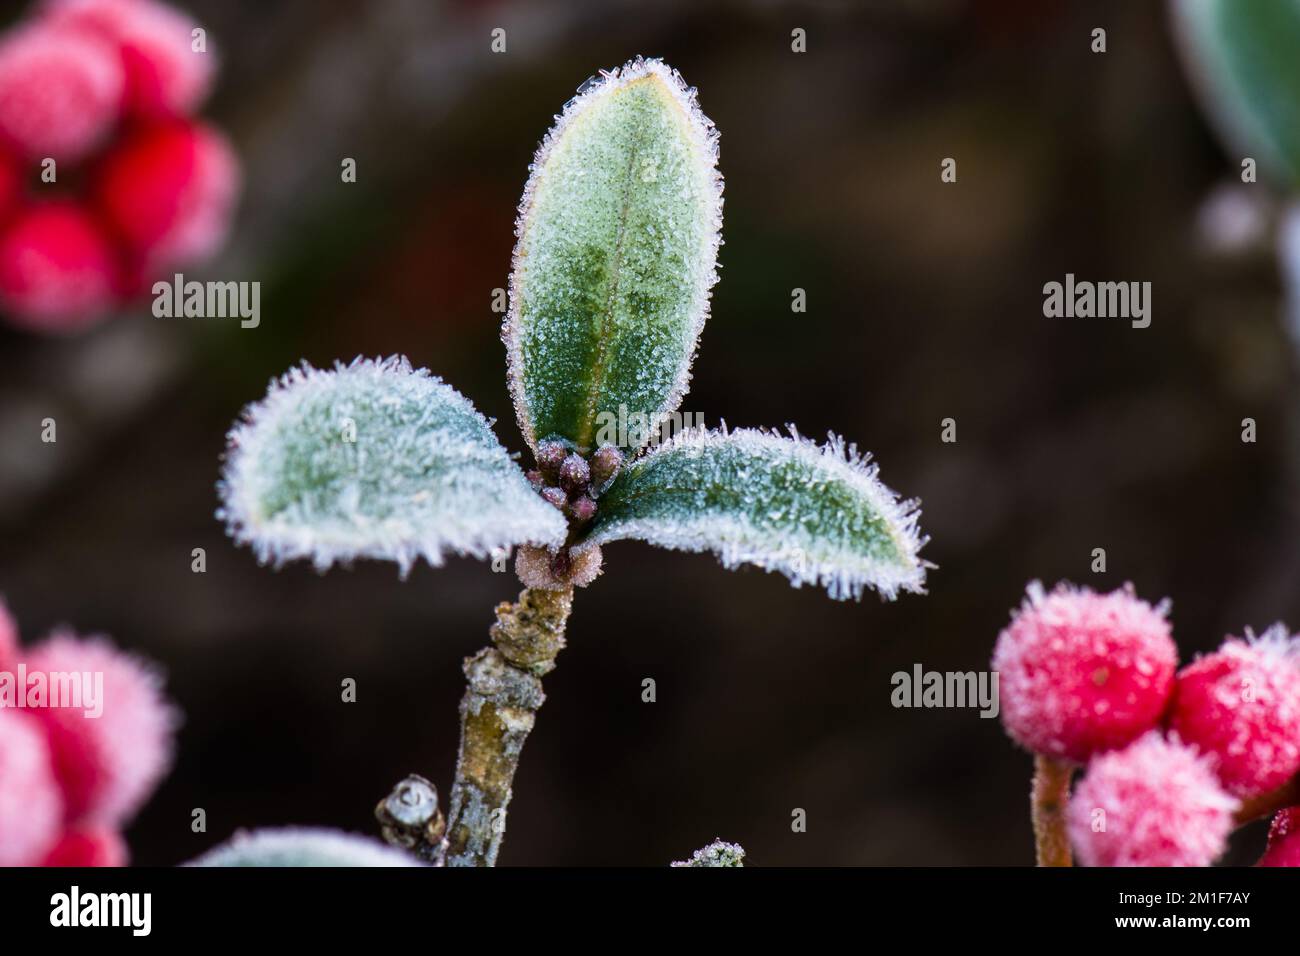 Gros plan d'un bourgeon de fleurs de Skimmia japonica entouré de baies rouges recouvertes de cristaux de glace d'un givre dans un jardin d'hiver britannique. Banque D'Images